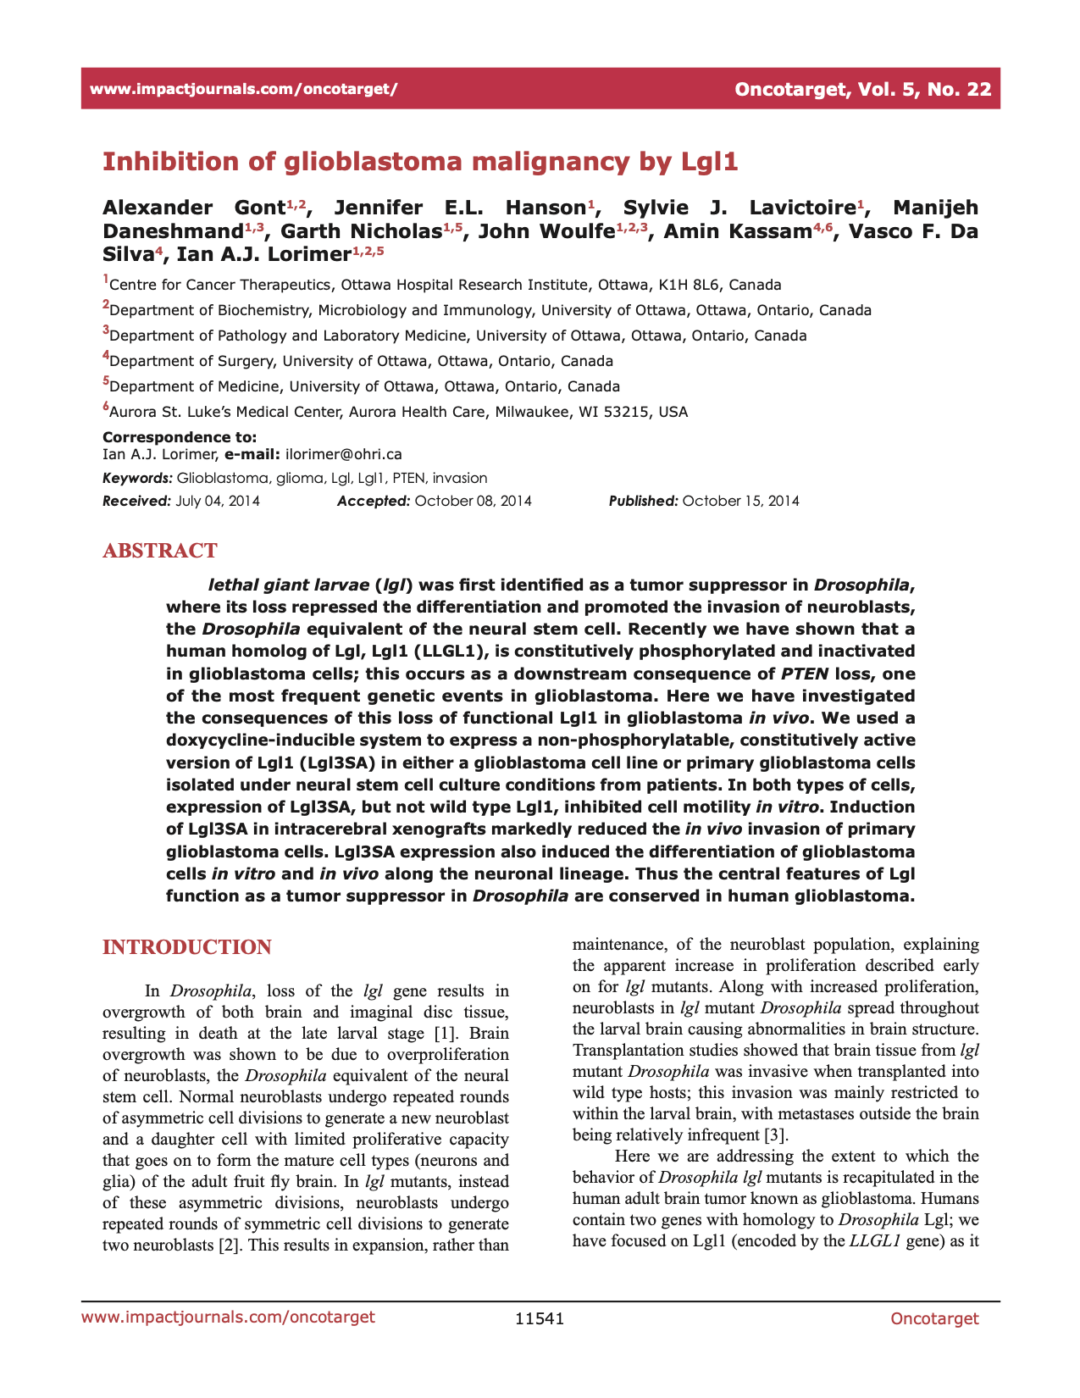 Inhibition of glioblastoma malignancy by Lgl1